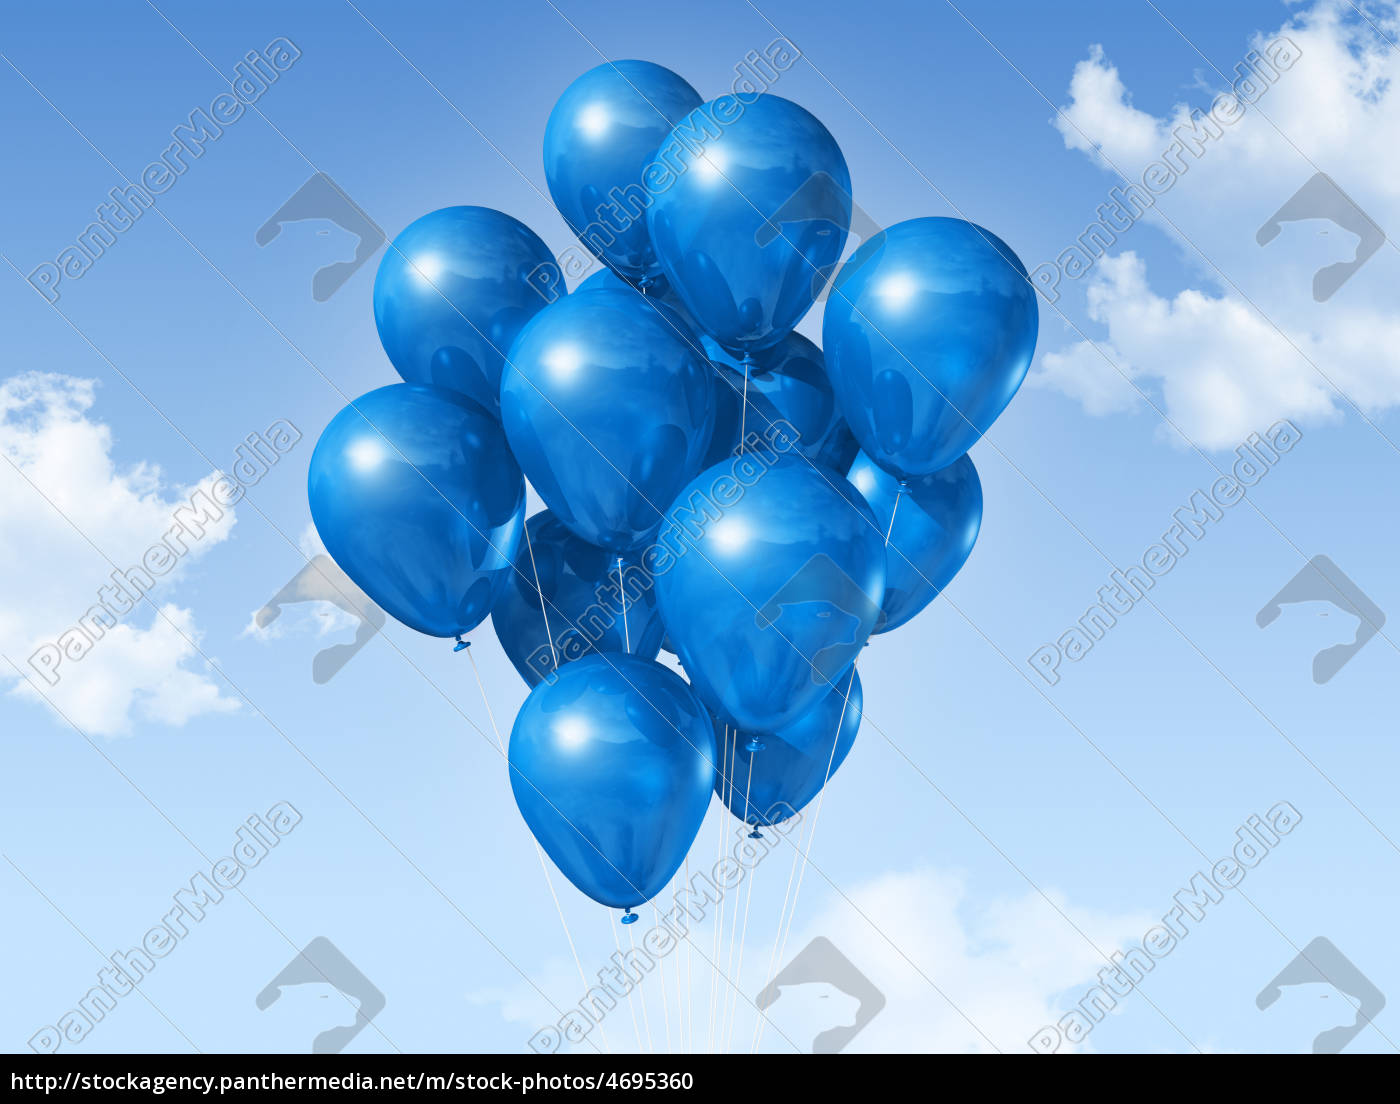 palloncini blu su un cielo blu - Stockphoto #4695360